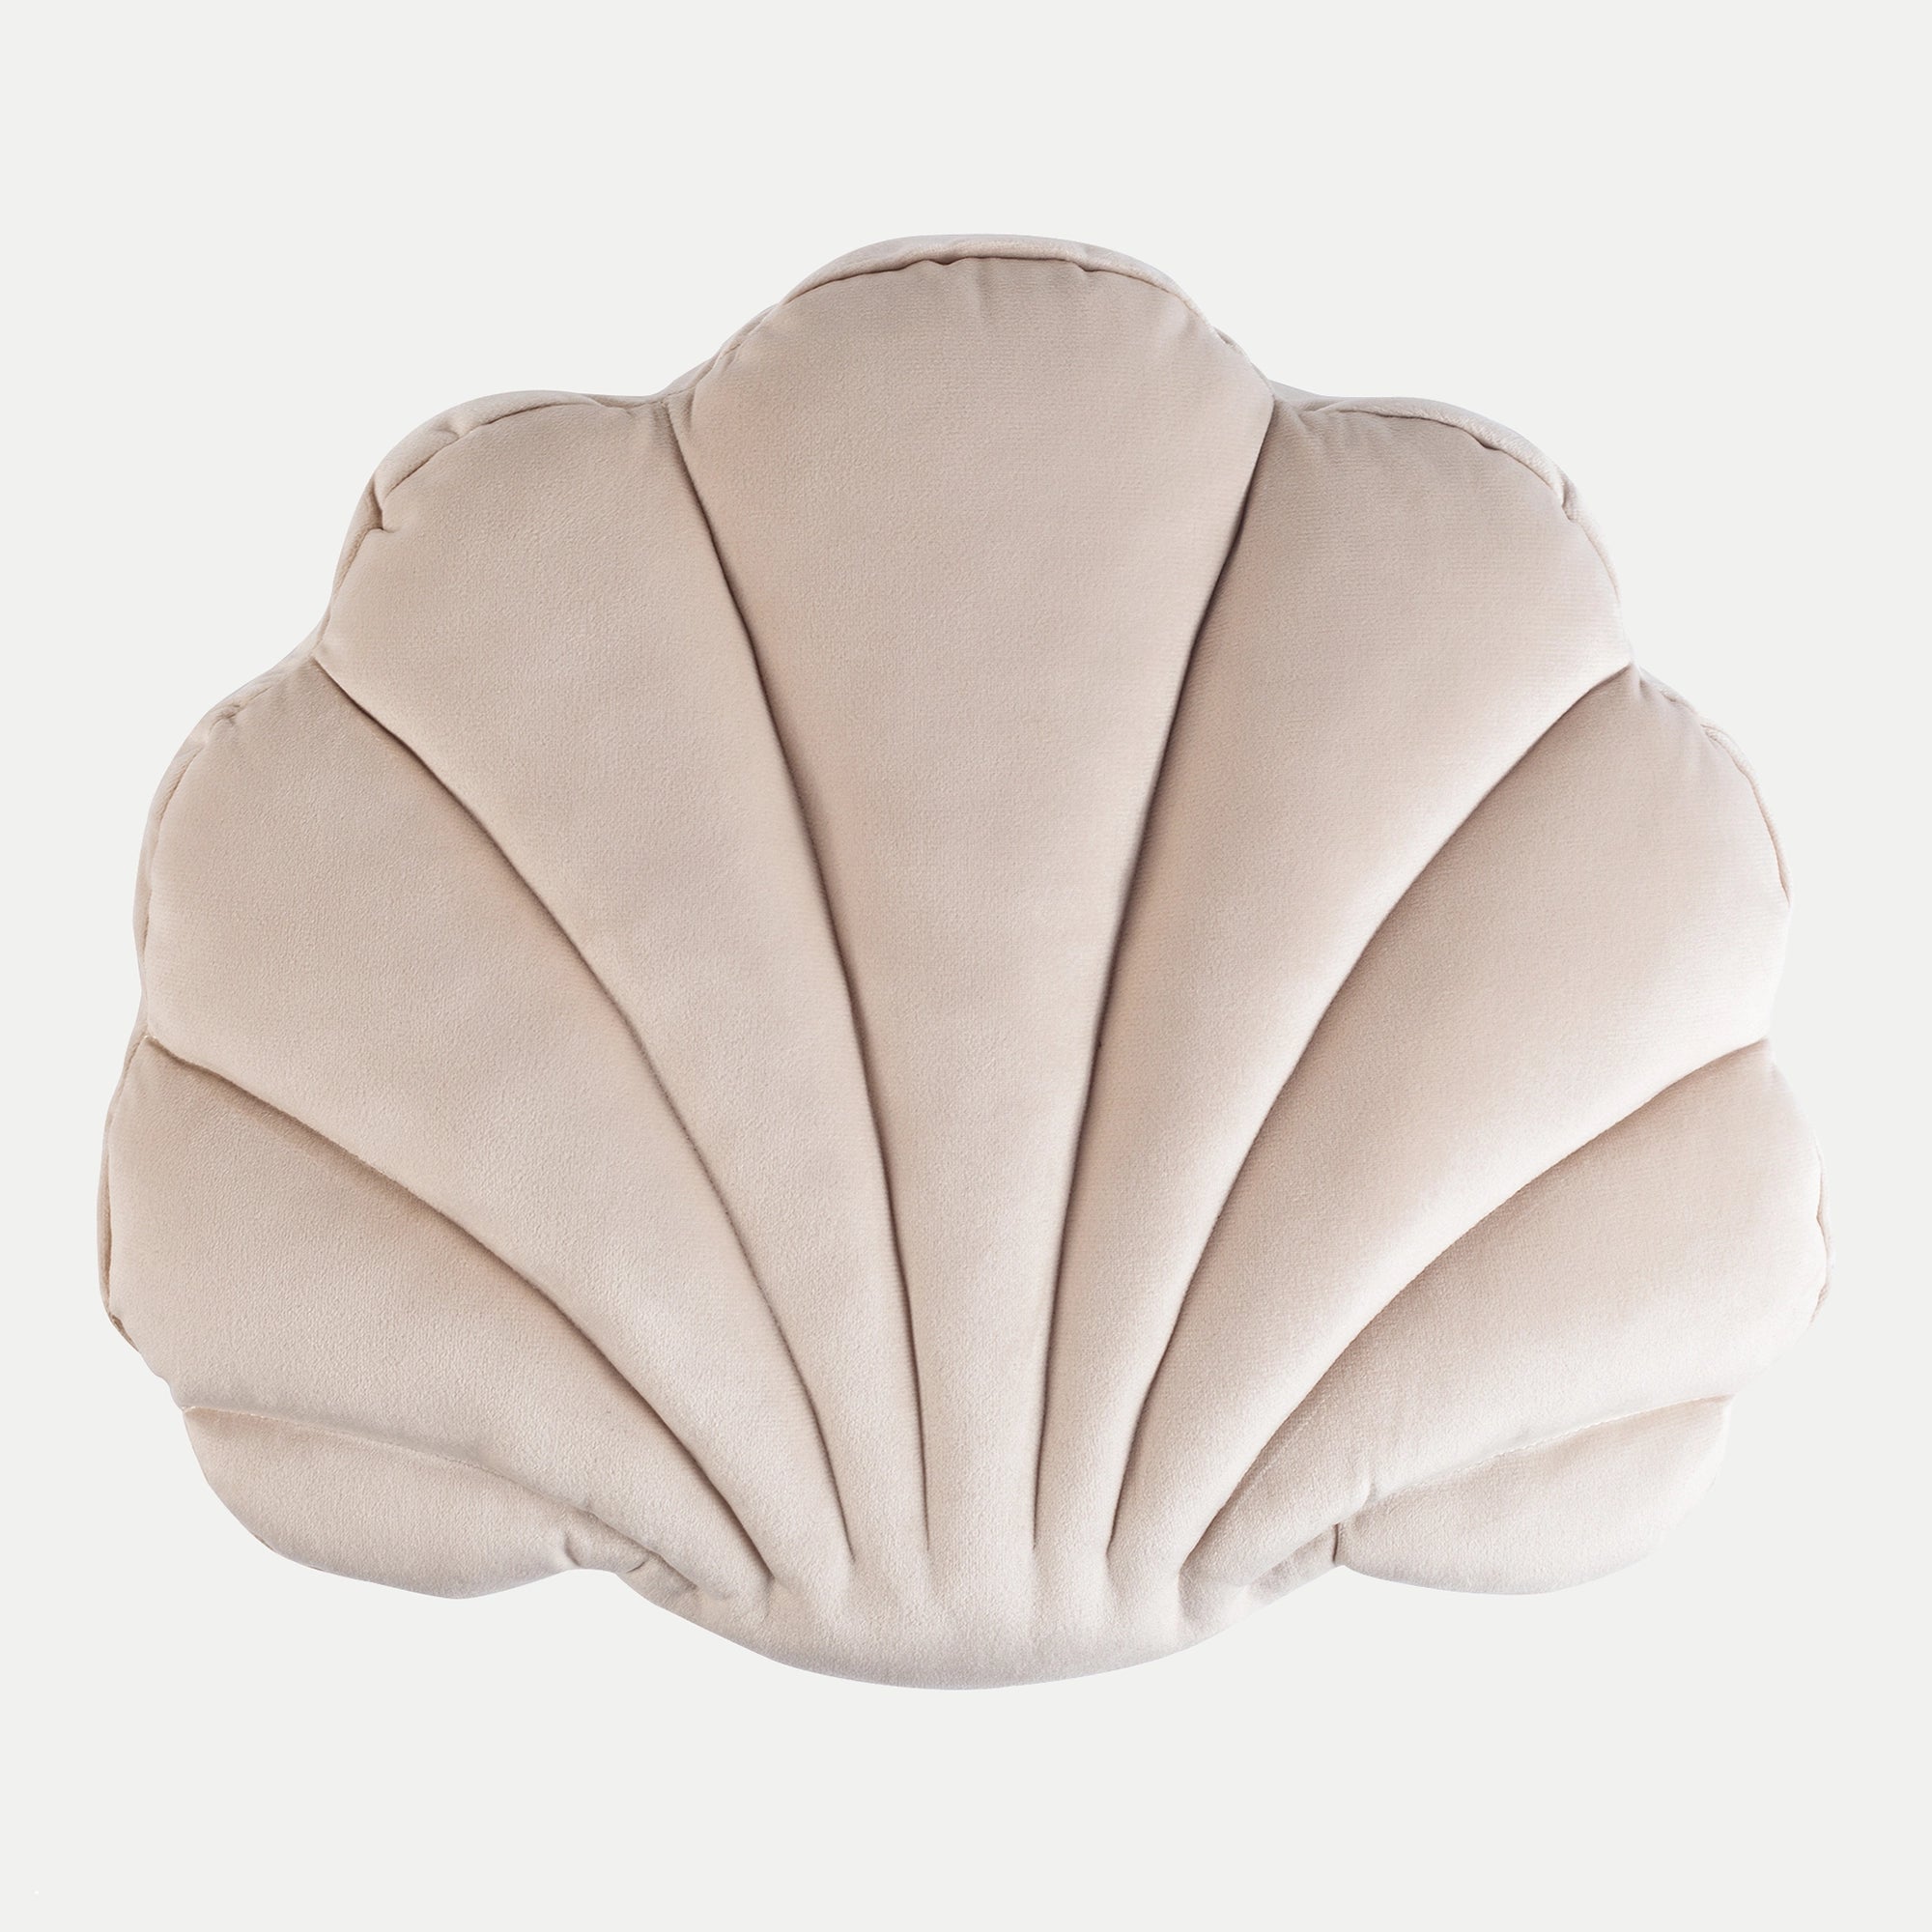 Velvet Shell Pillows